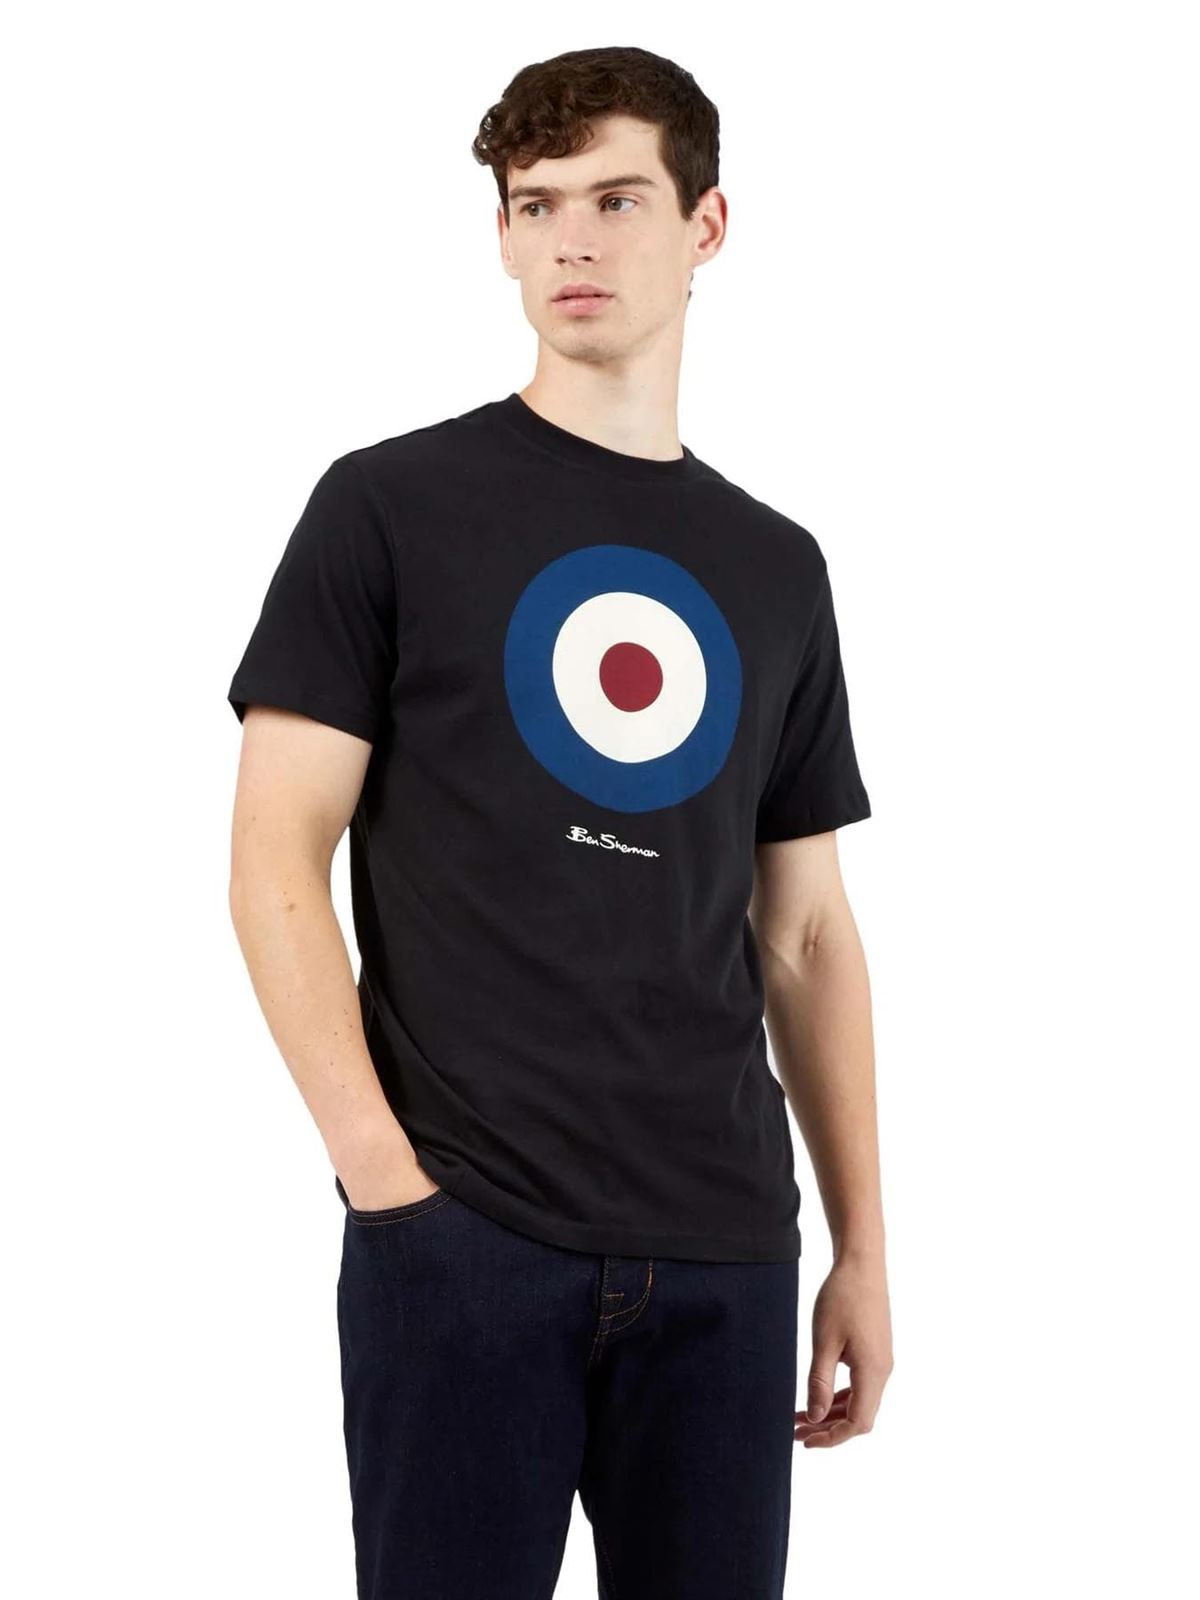 Camiseta Ben Sherman Signature Target Tee 0065093 290 black - Imagen 1